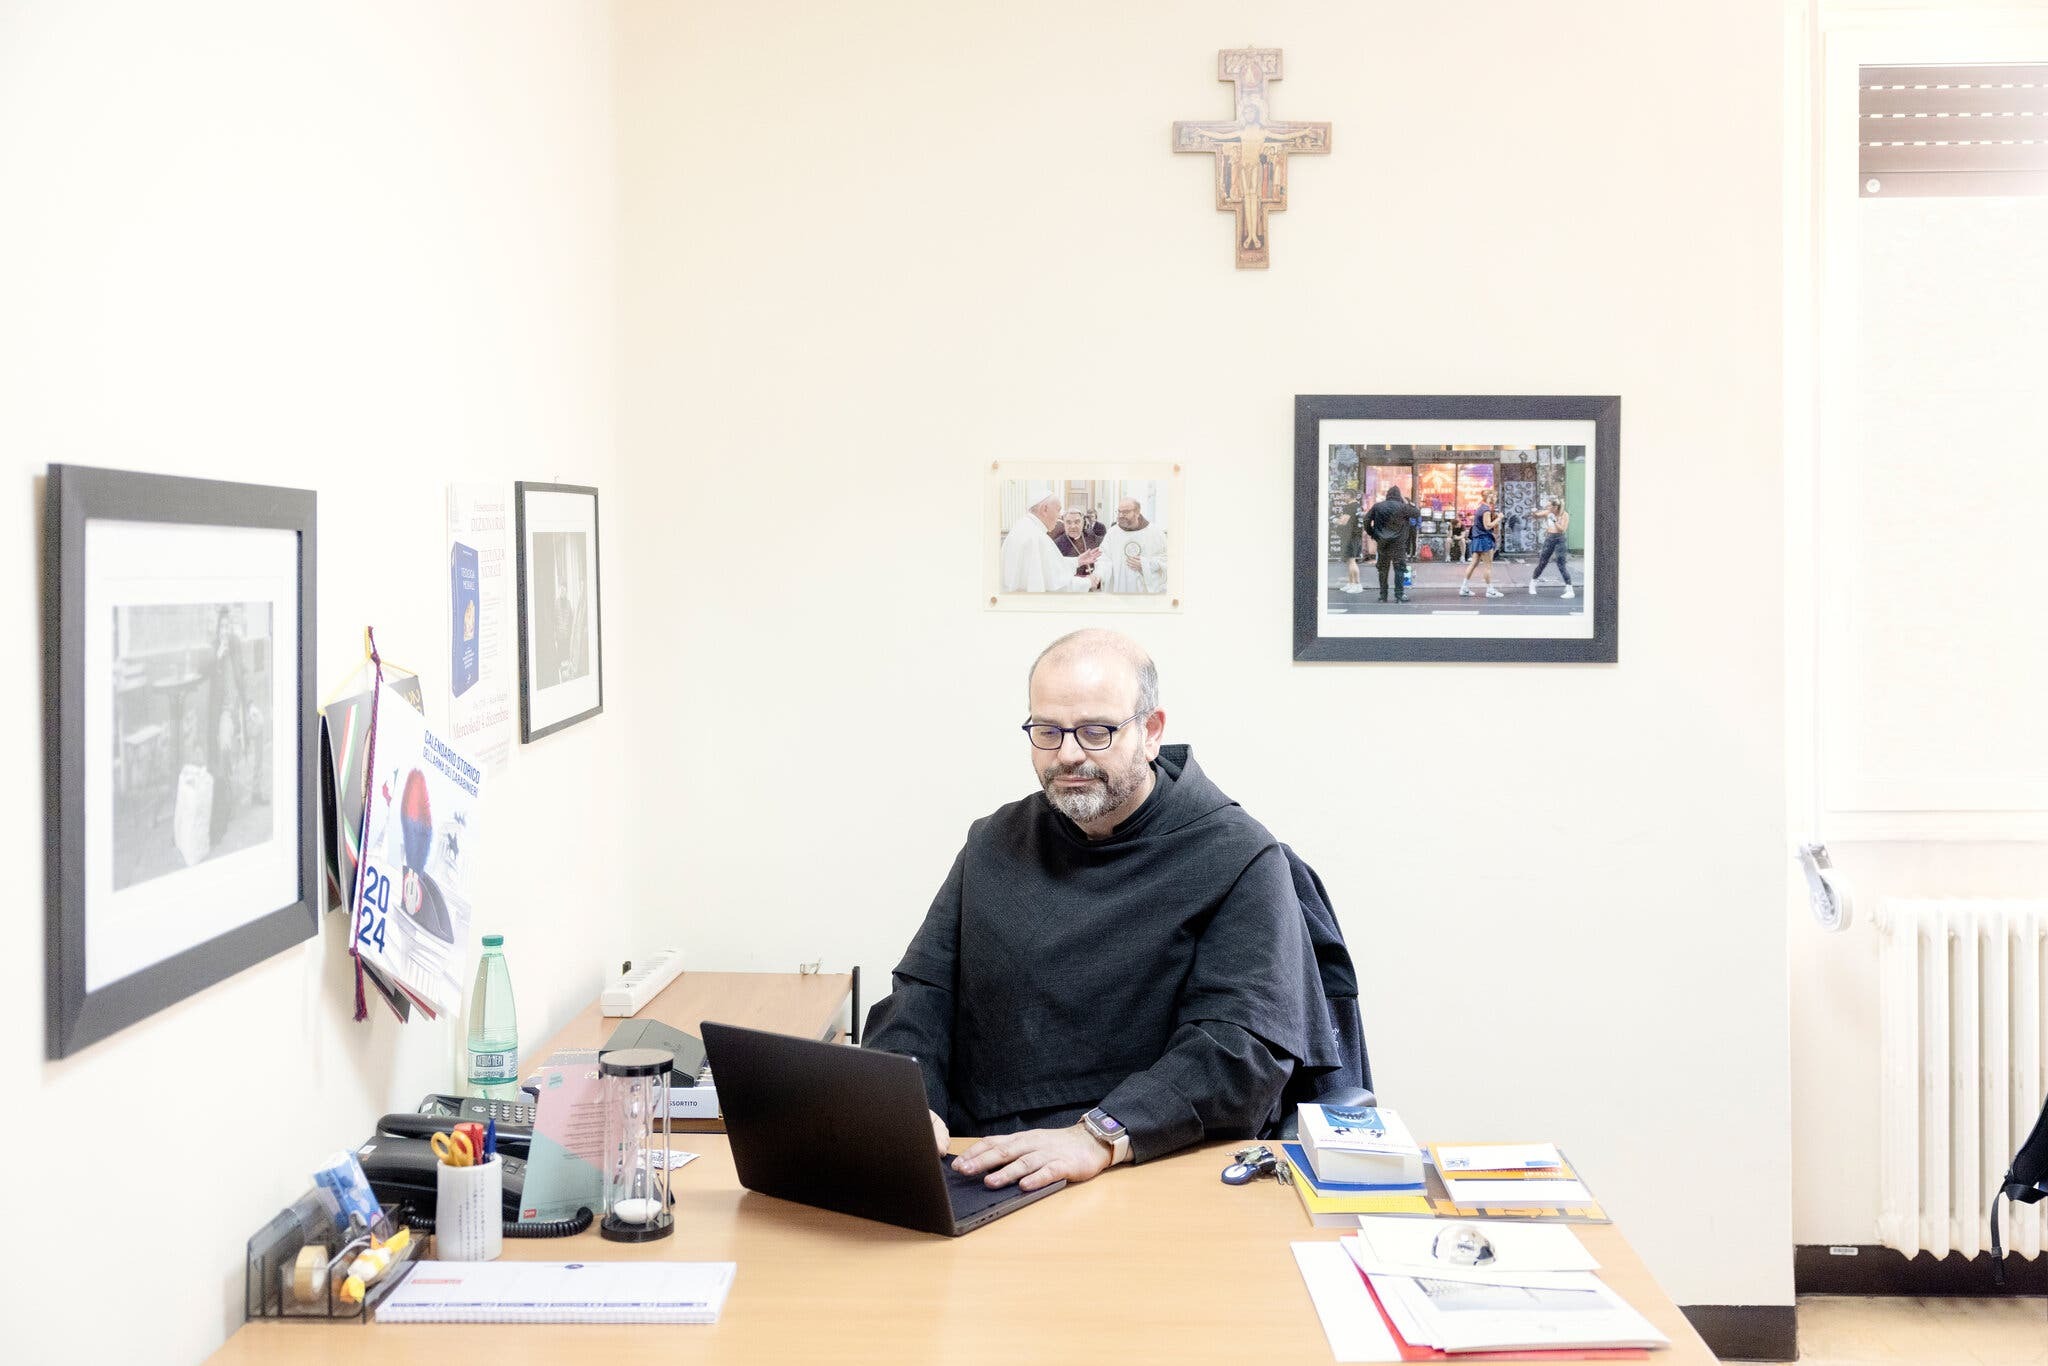 El Padre Benanti en su oficina en la Pontificia Universidad Gregoriana, donde imparte ética. (Alessandro Penso para The New York Times)